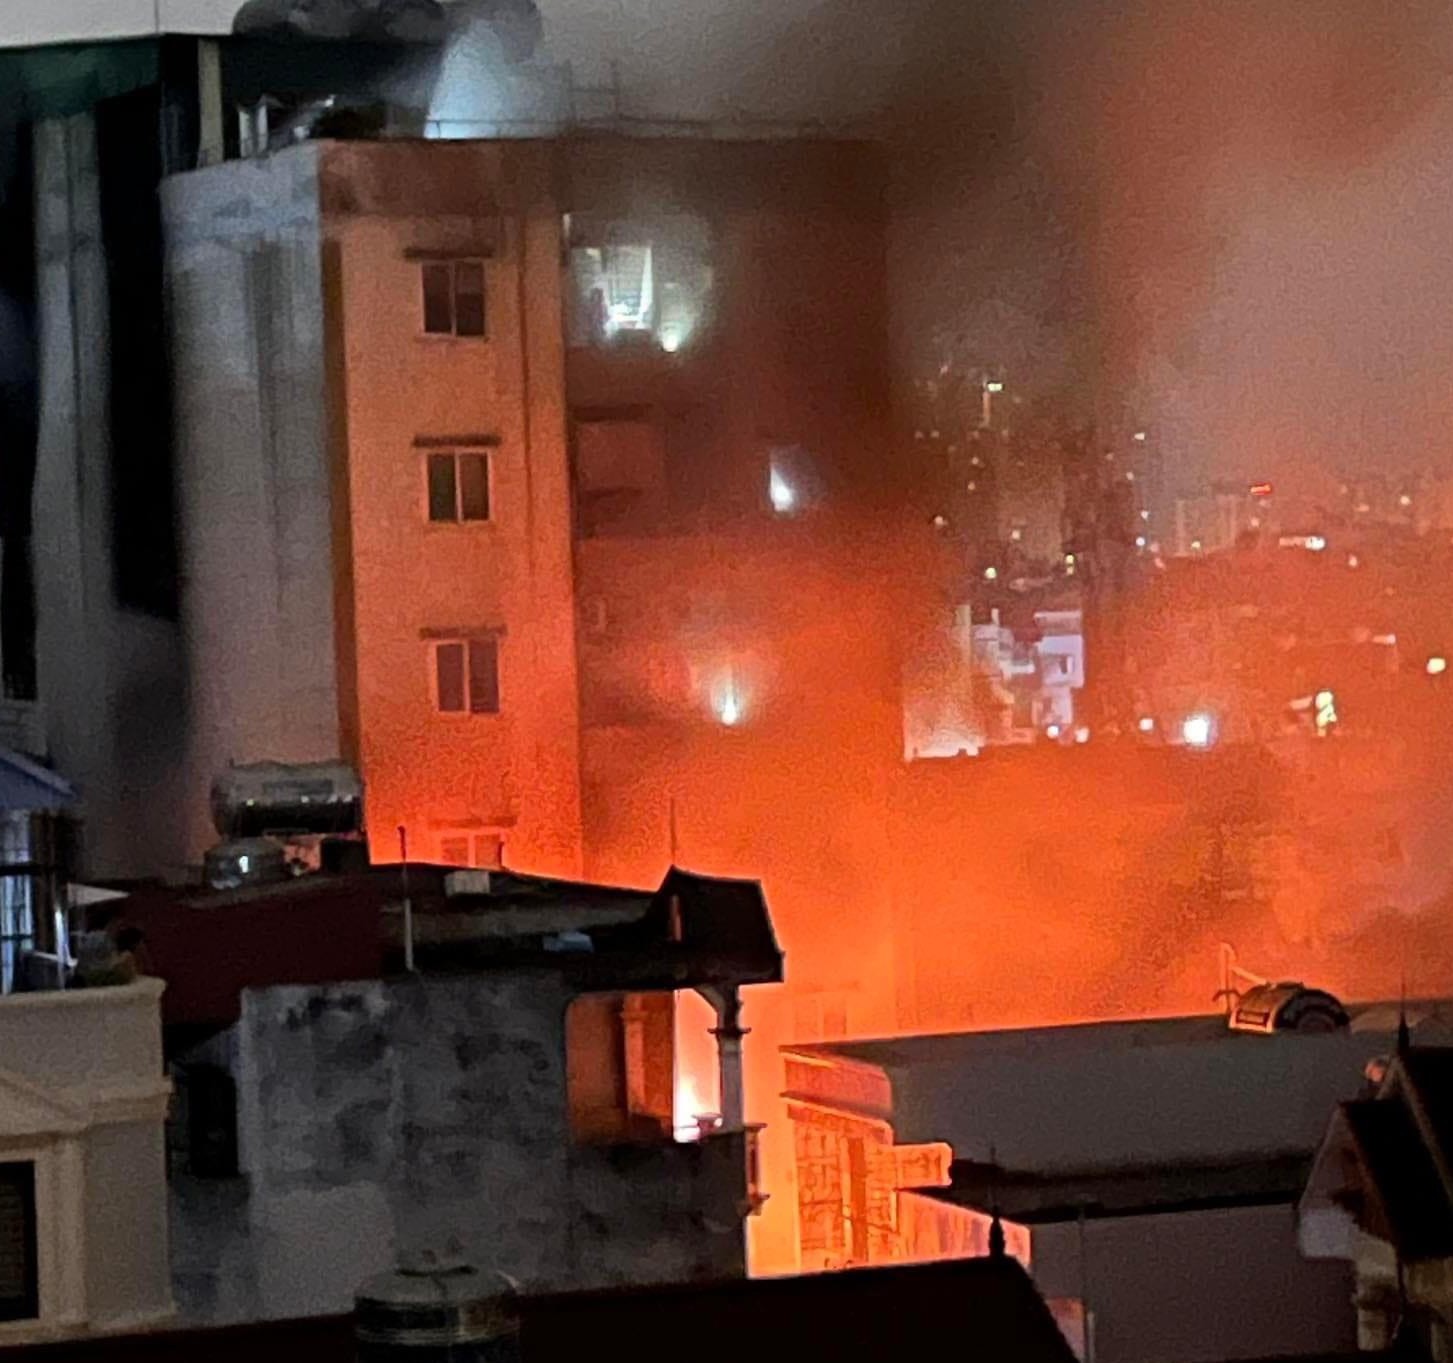 VTV từng phản ánh nguy cơ cháy nổ tại chung cư mini phố Khương Hạ từ 6 năm trước - ảnh 1